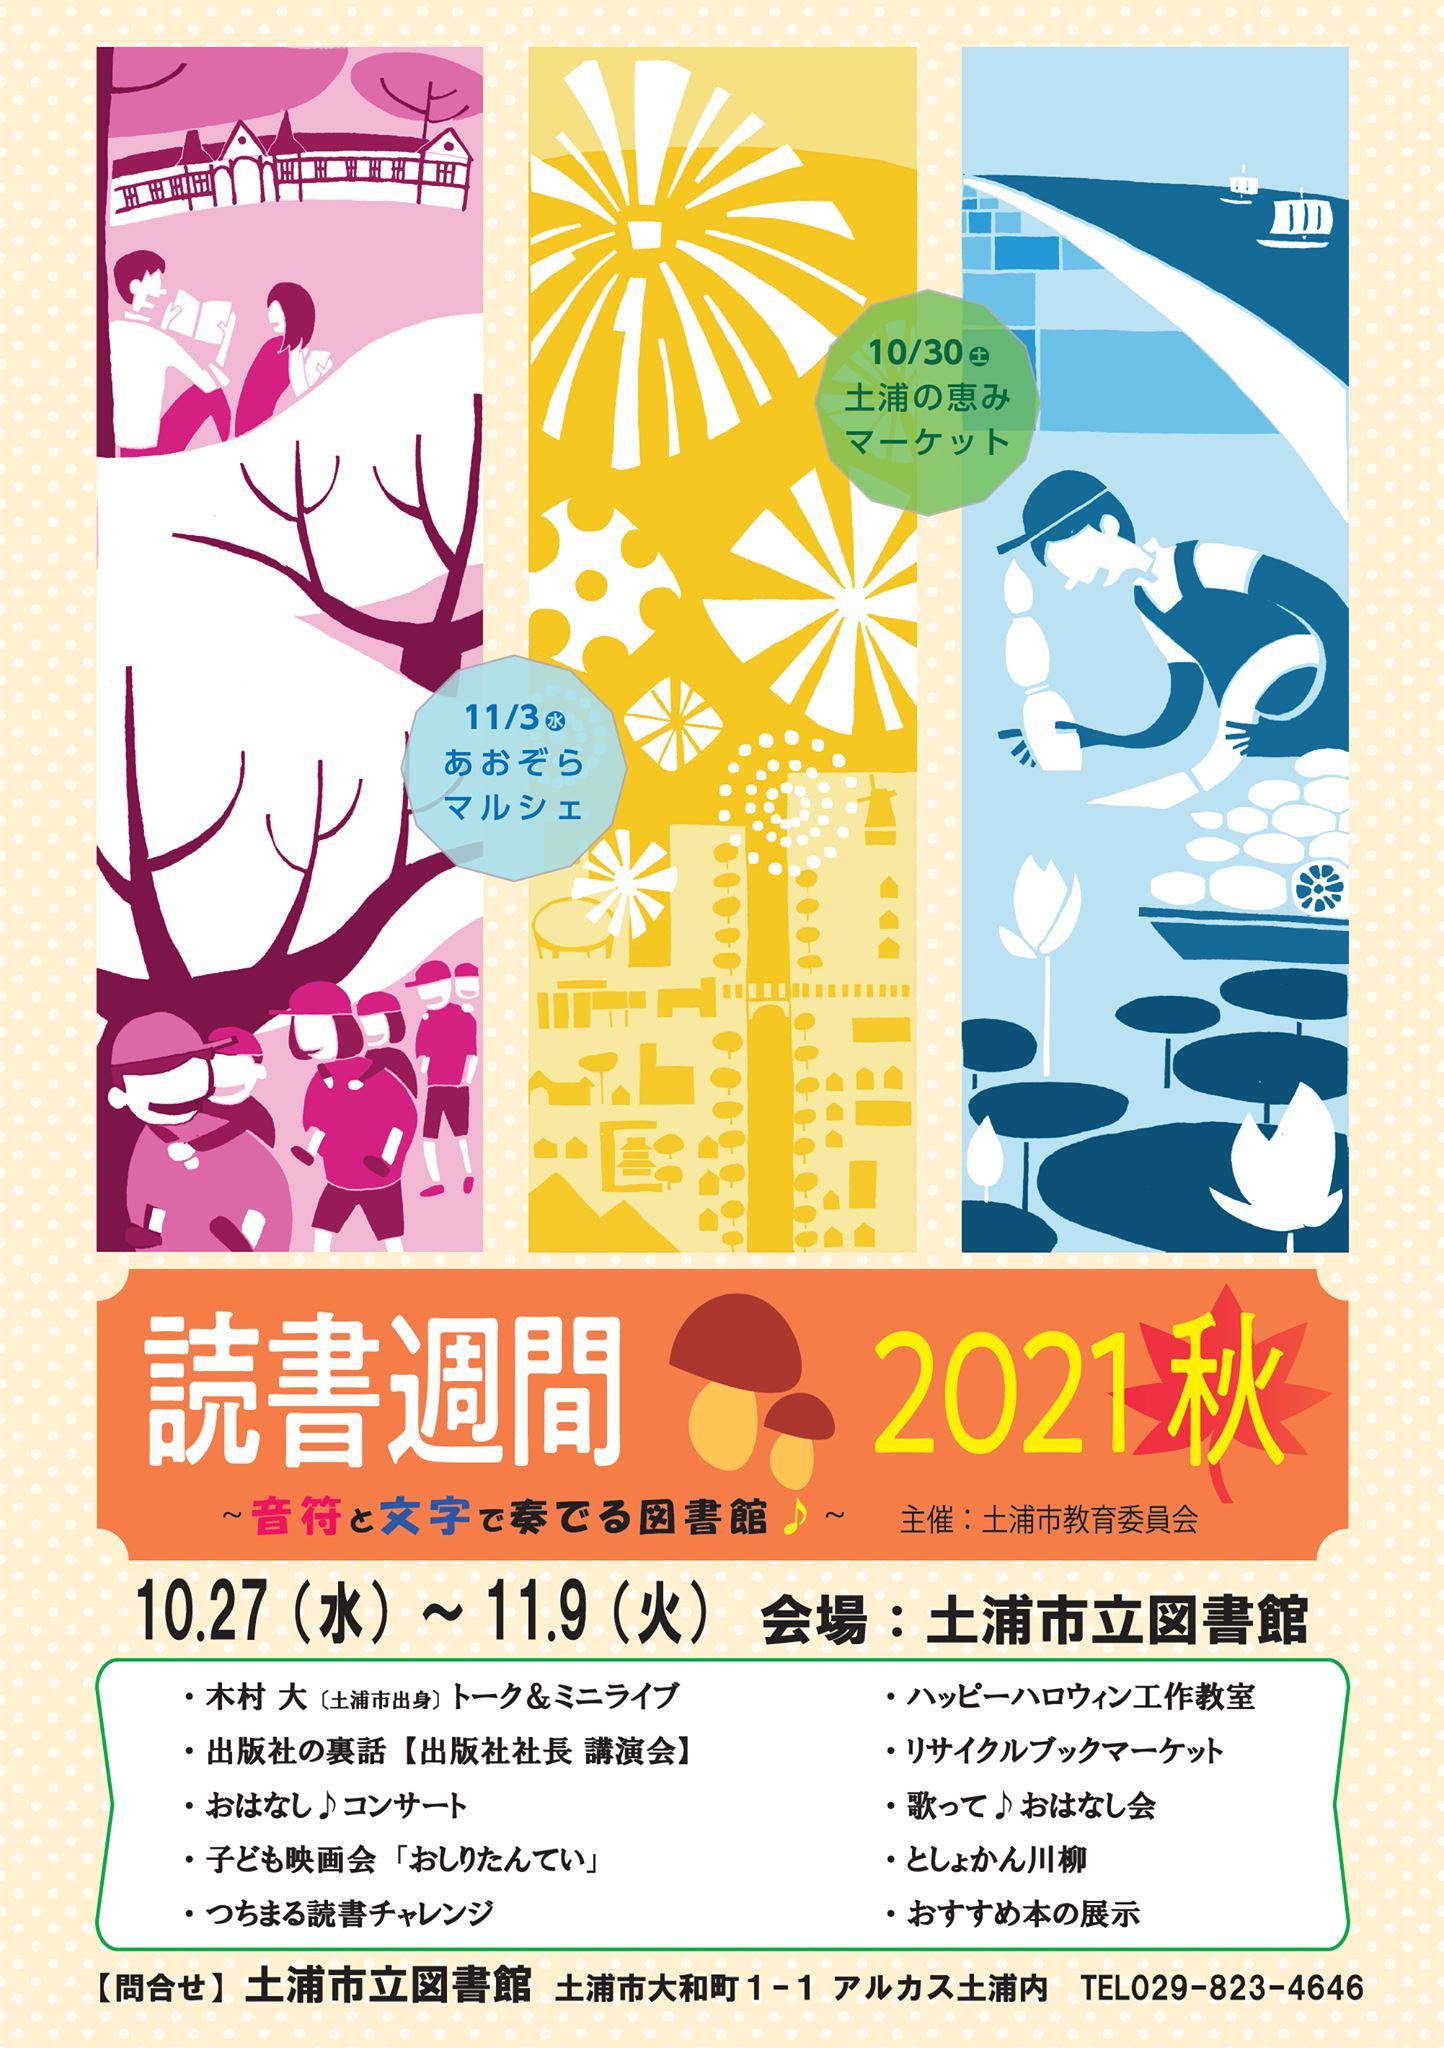 土浦市立図書館の秋のイベントが盛りだくさんです!page-visual 土浦市立図書館の秋のイベントが盛りだくさんです!ビジュアル